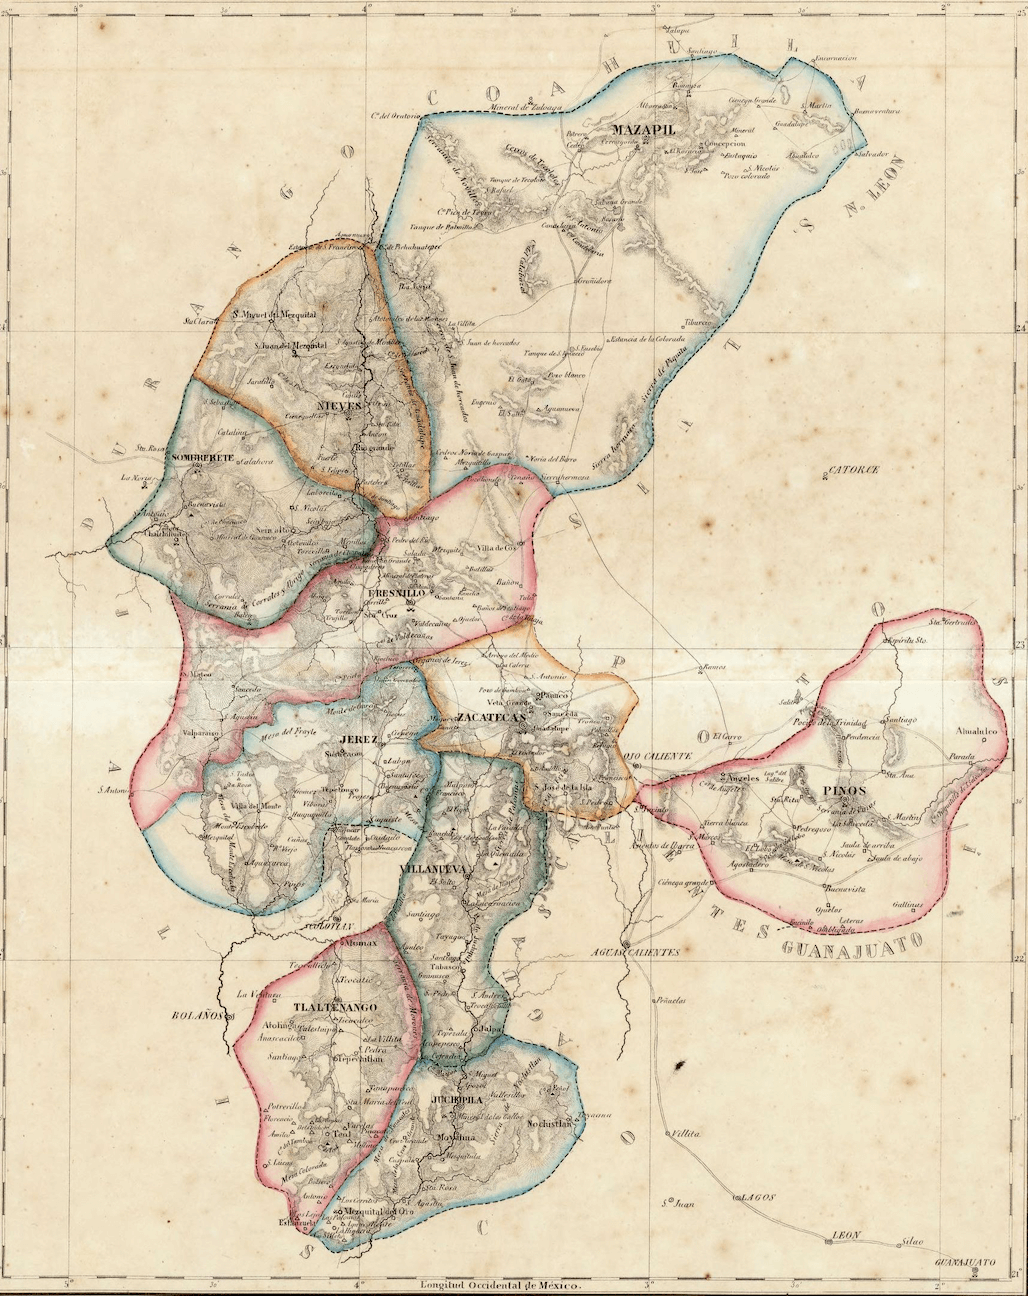 Zacatecas 1857